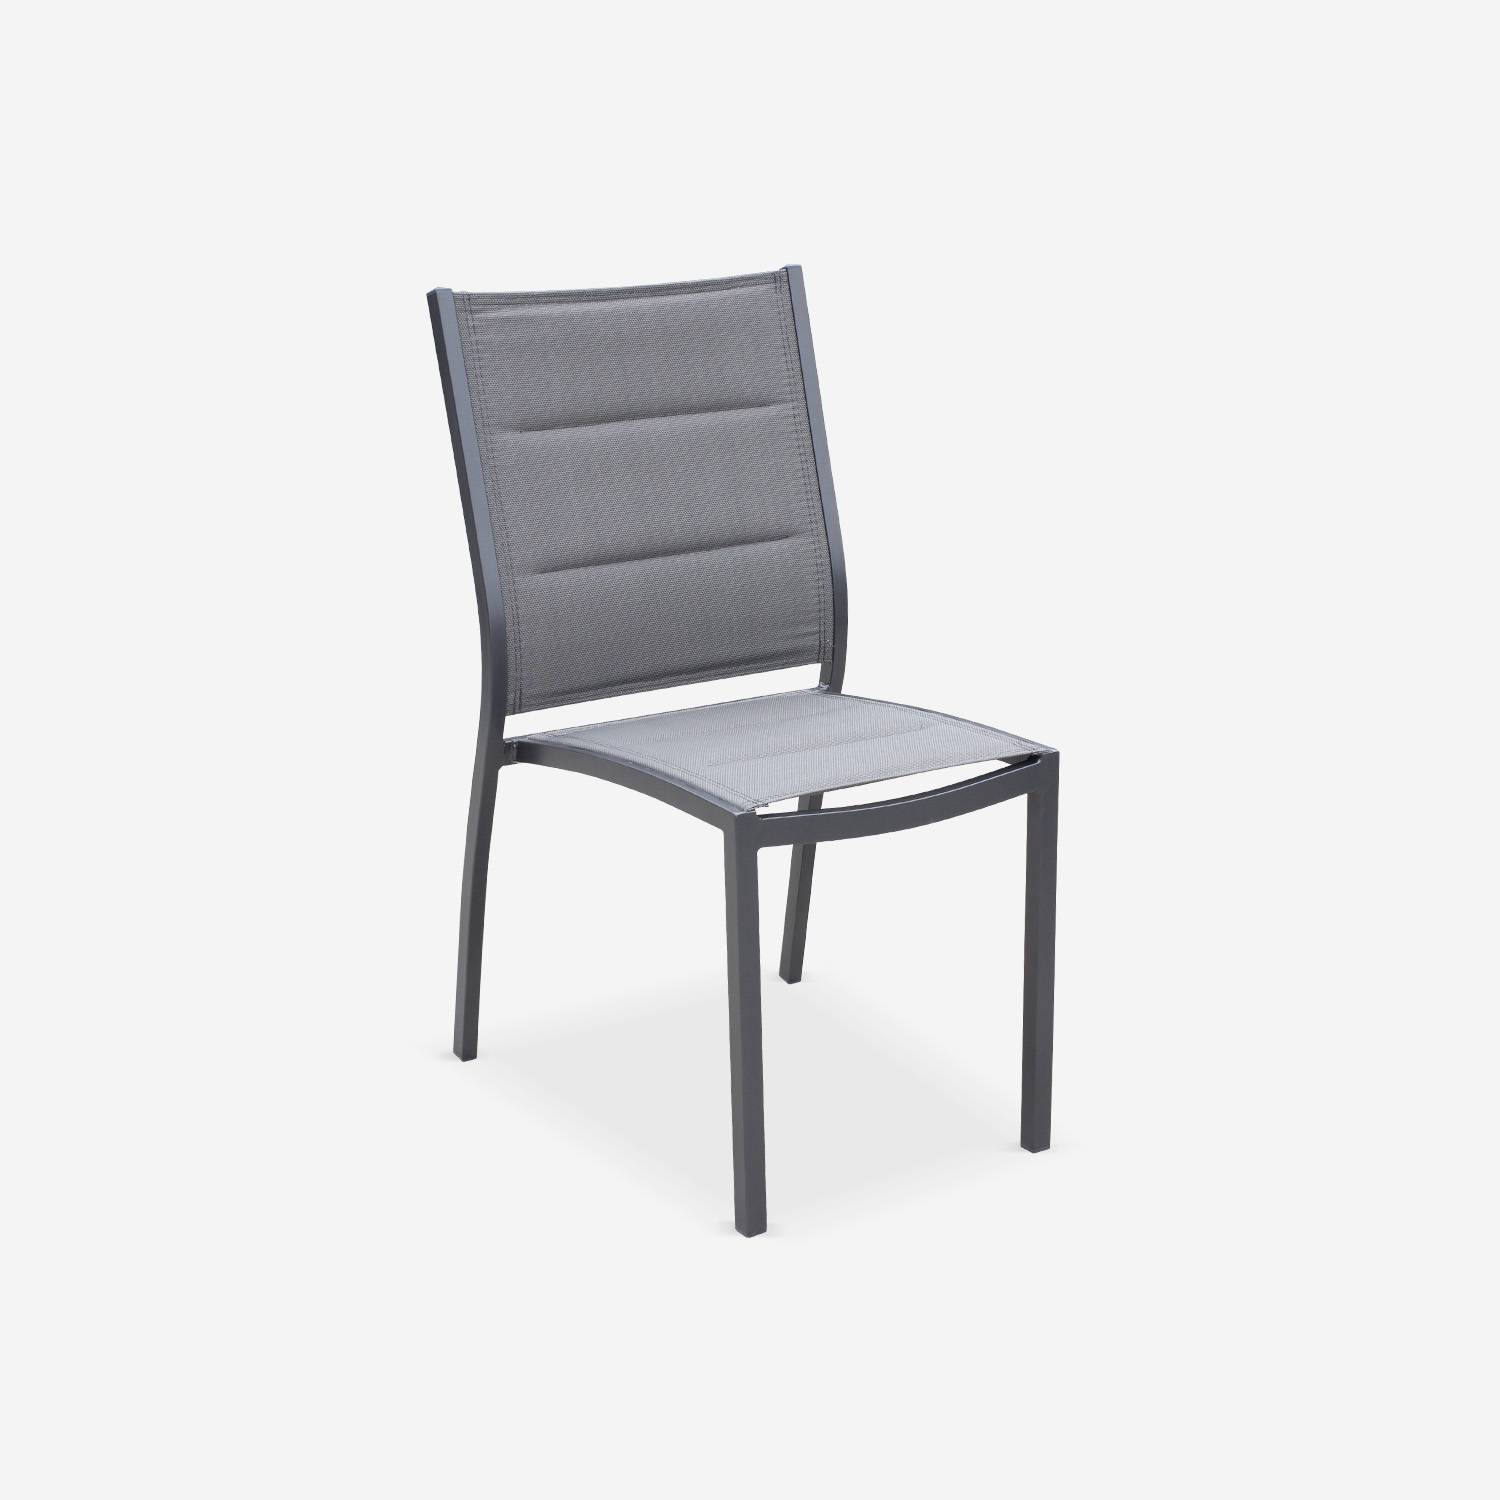 Conjunto de 2 sillas - Chicago / Odenton Antracita - En aluminio antracita y textilene gris oscuro, apilable Photo2